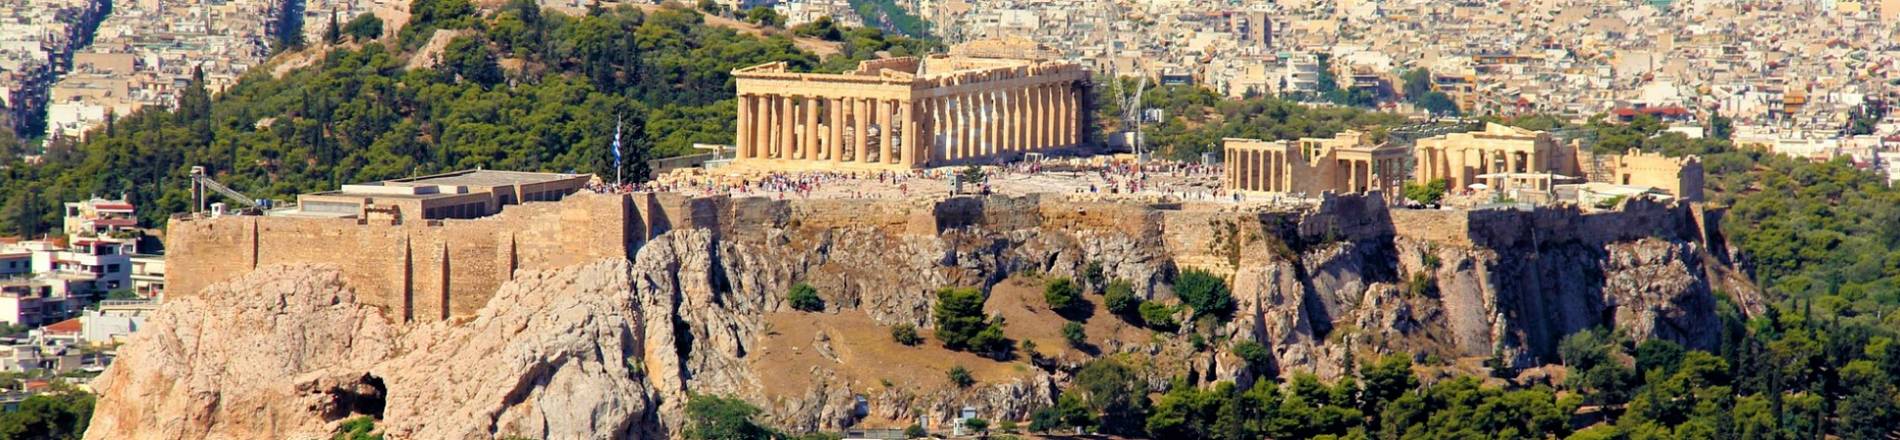 Atena i Antička Grčka 8 dana PREMIUM